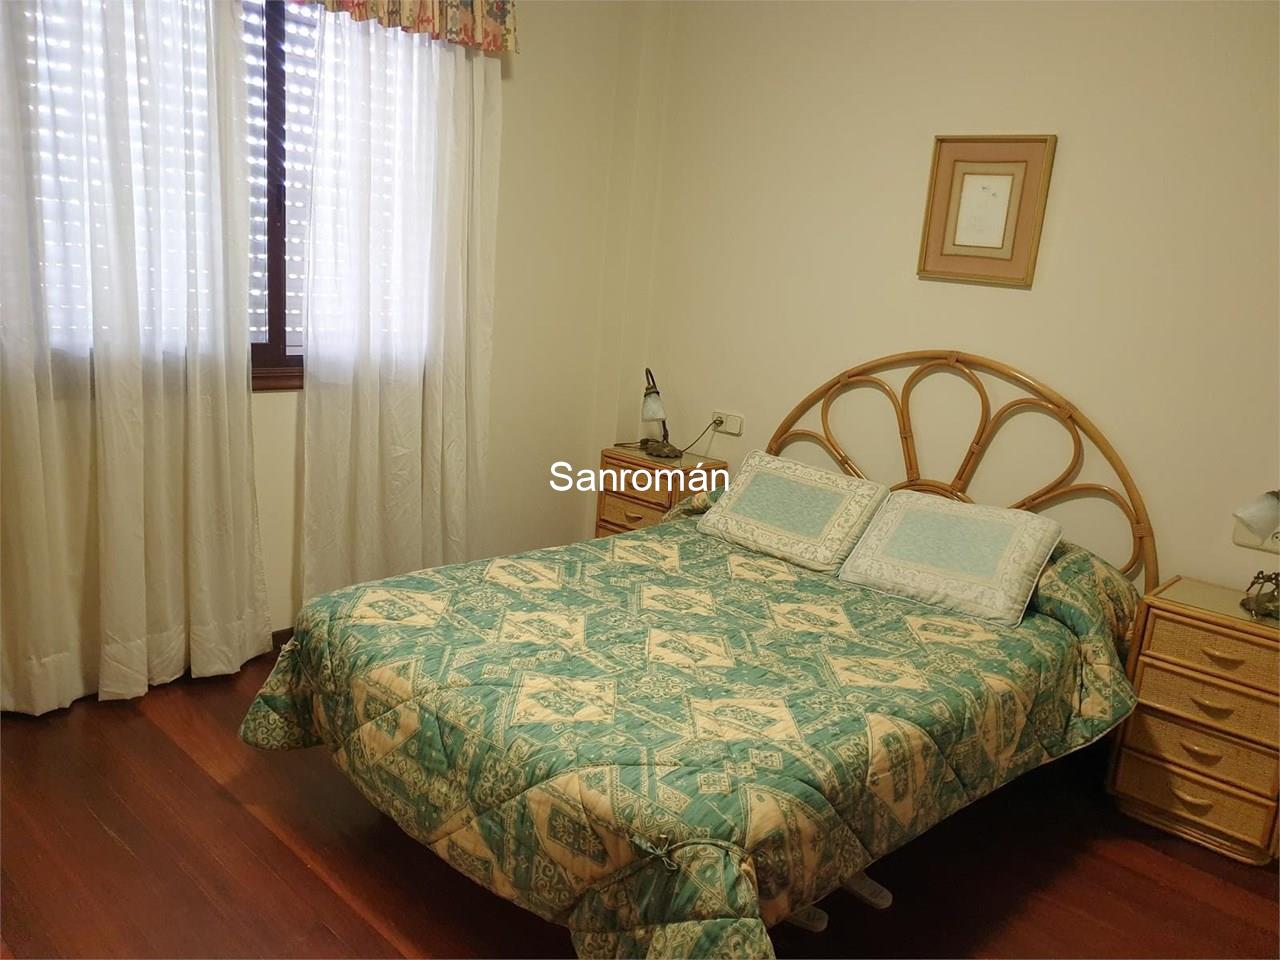 Foto 14 Apartamento dos dormitorios en Playa América - Nigrán. Alquiler temporada invierno Sept / Junio.